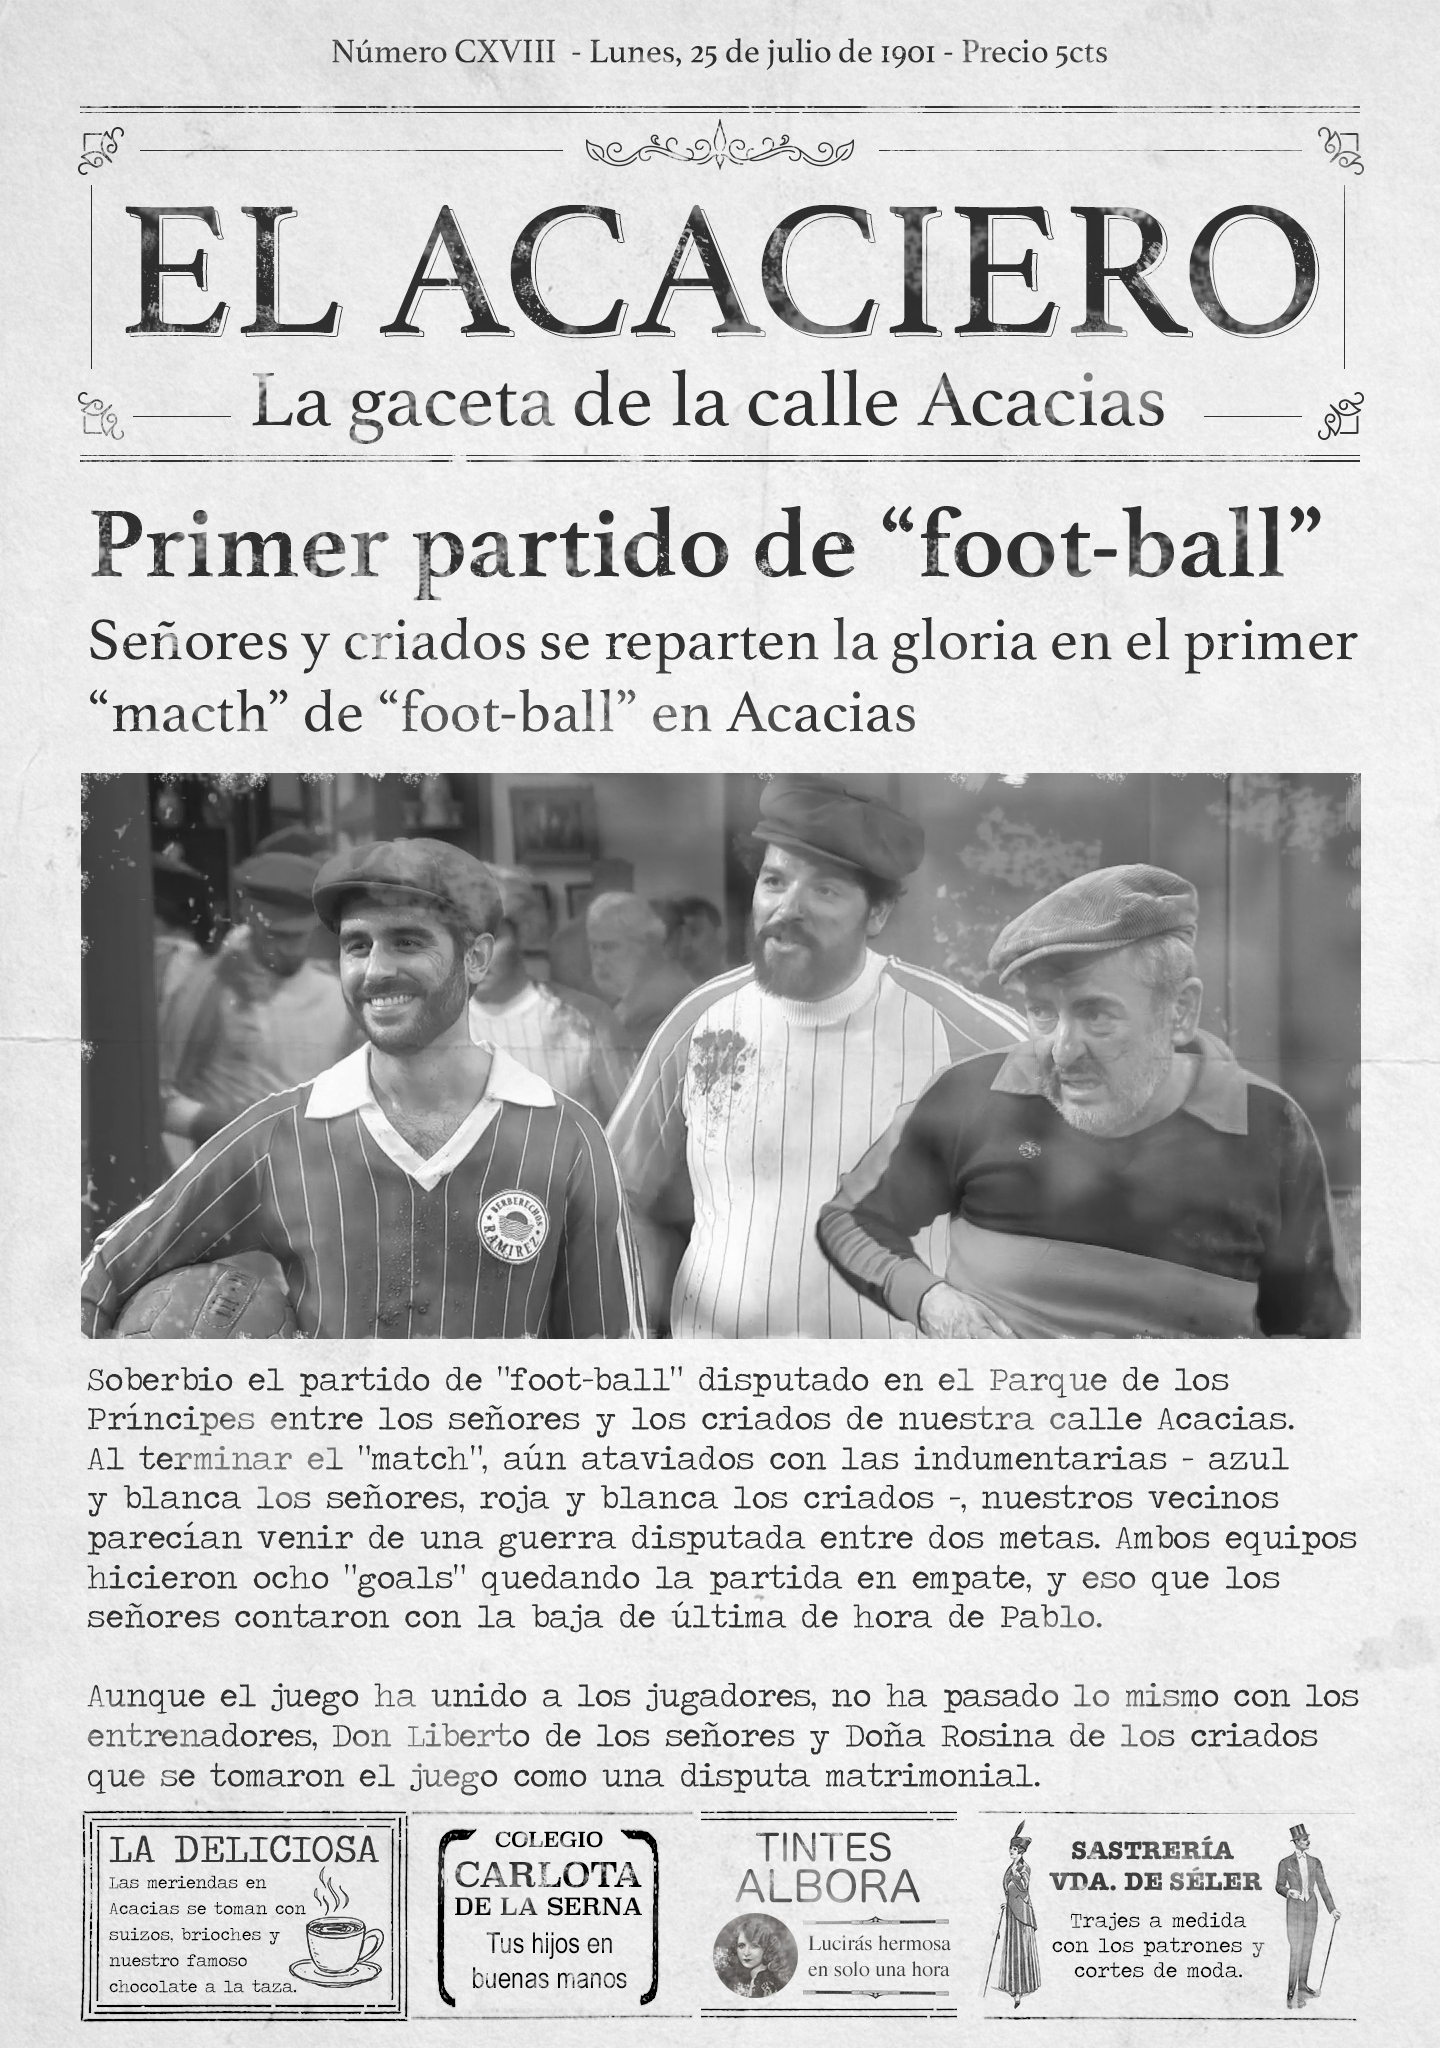 El fútbol llega a Acacias 38